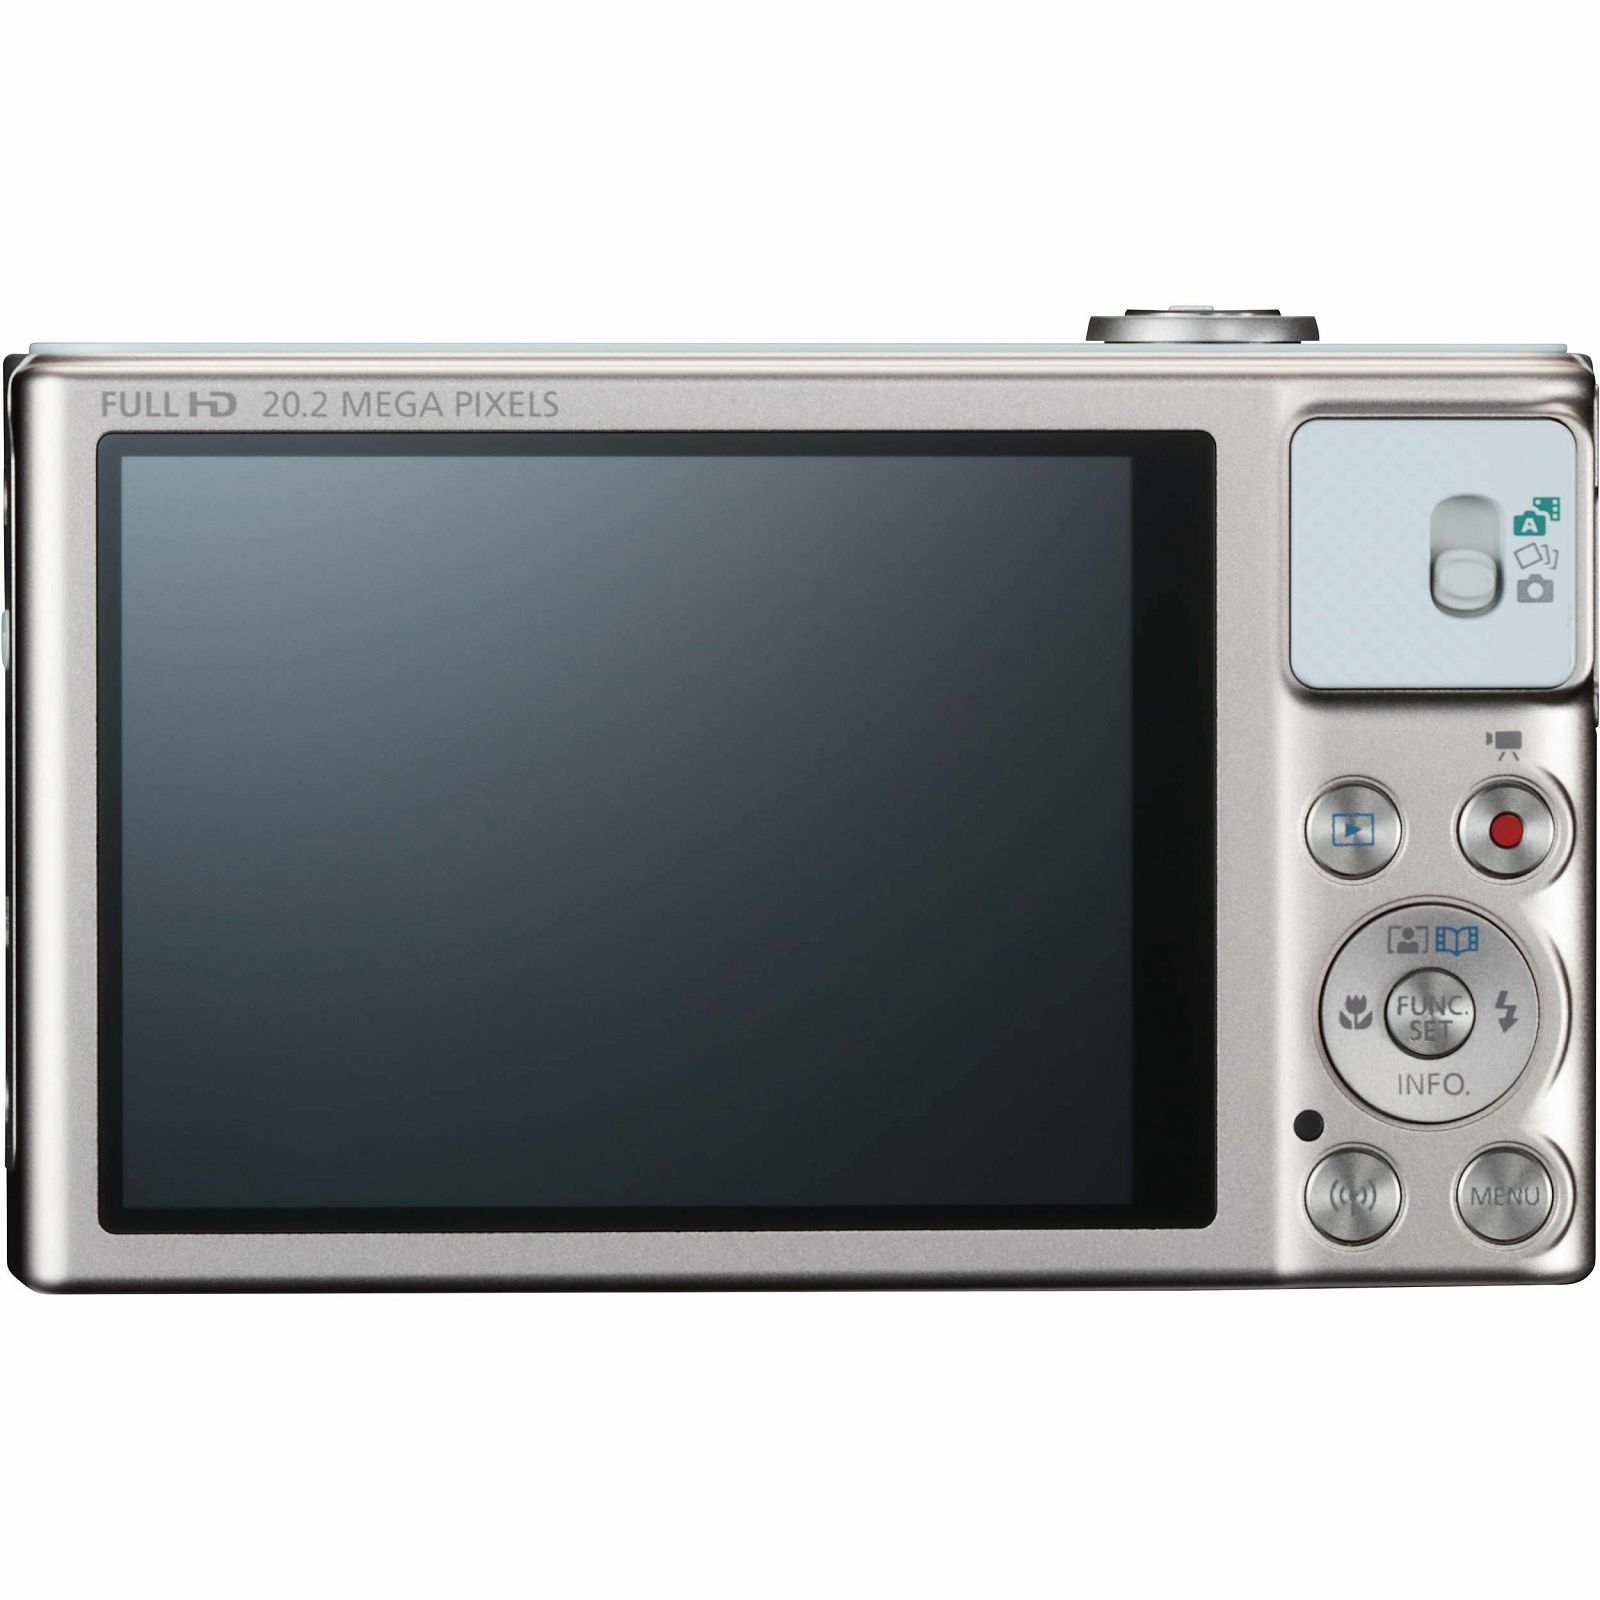 Canon Powershot SX620 HS White bijeli digitalni fotoaparat SX620 HS